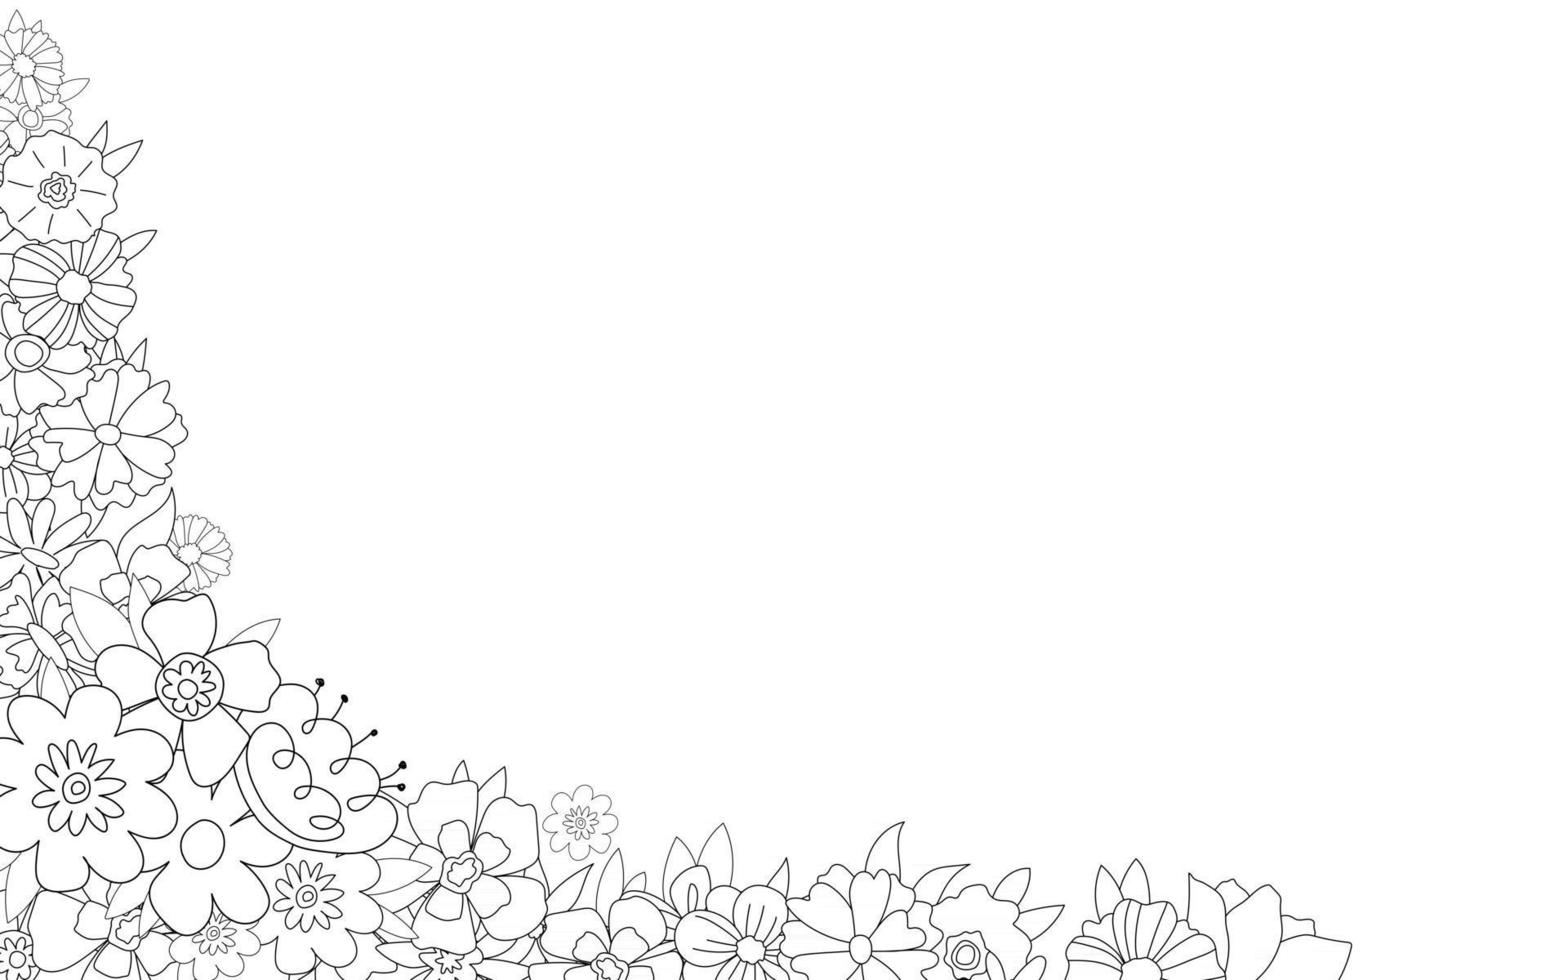 joli cadre isolé noir et blanc avec des fleurs pour une invitation de mariage joyeux anniversaire ligne belle illustration vectorielle vintage de griffonnages vecteur